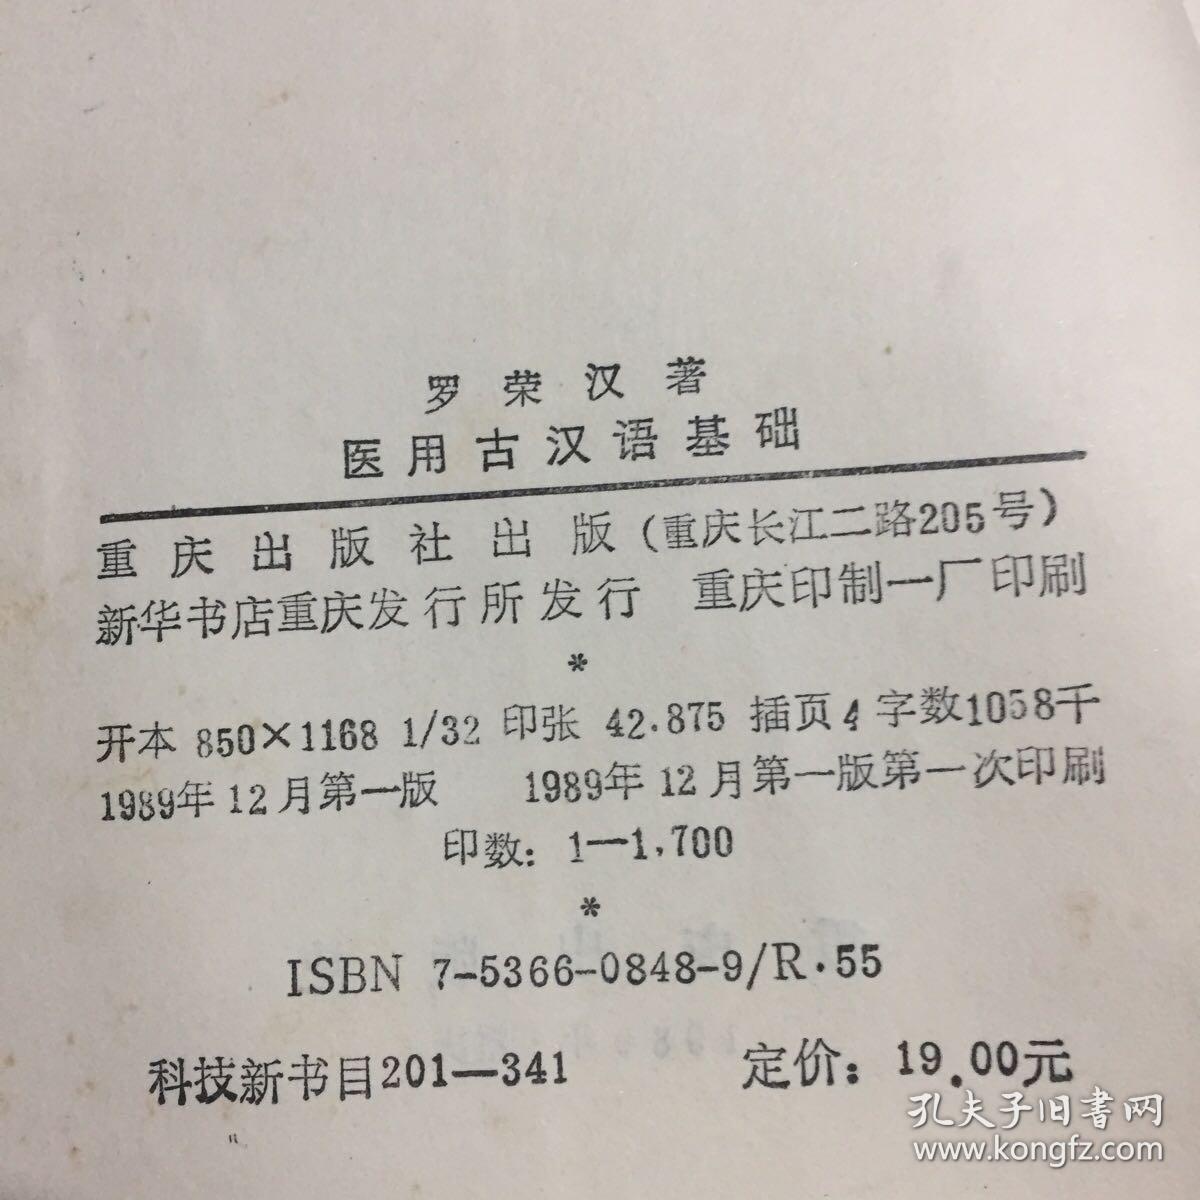 医用古汉语基础 1989年一印印1700册九品A医下区